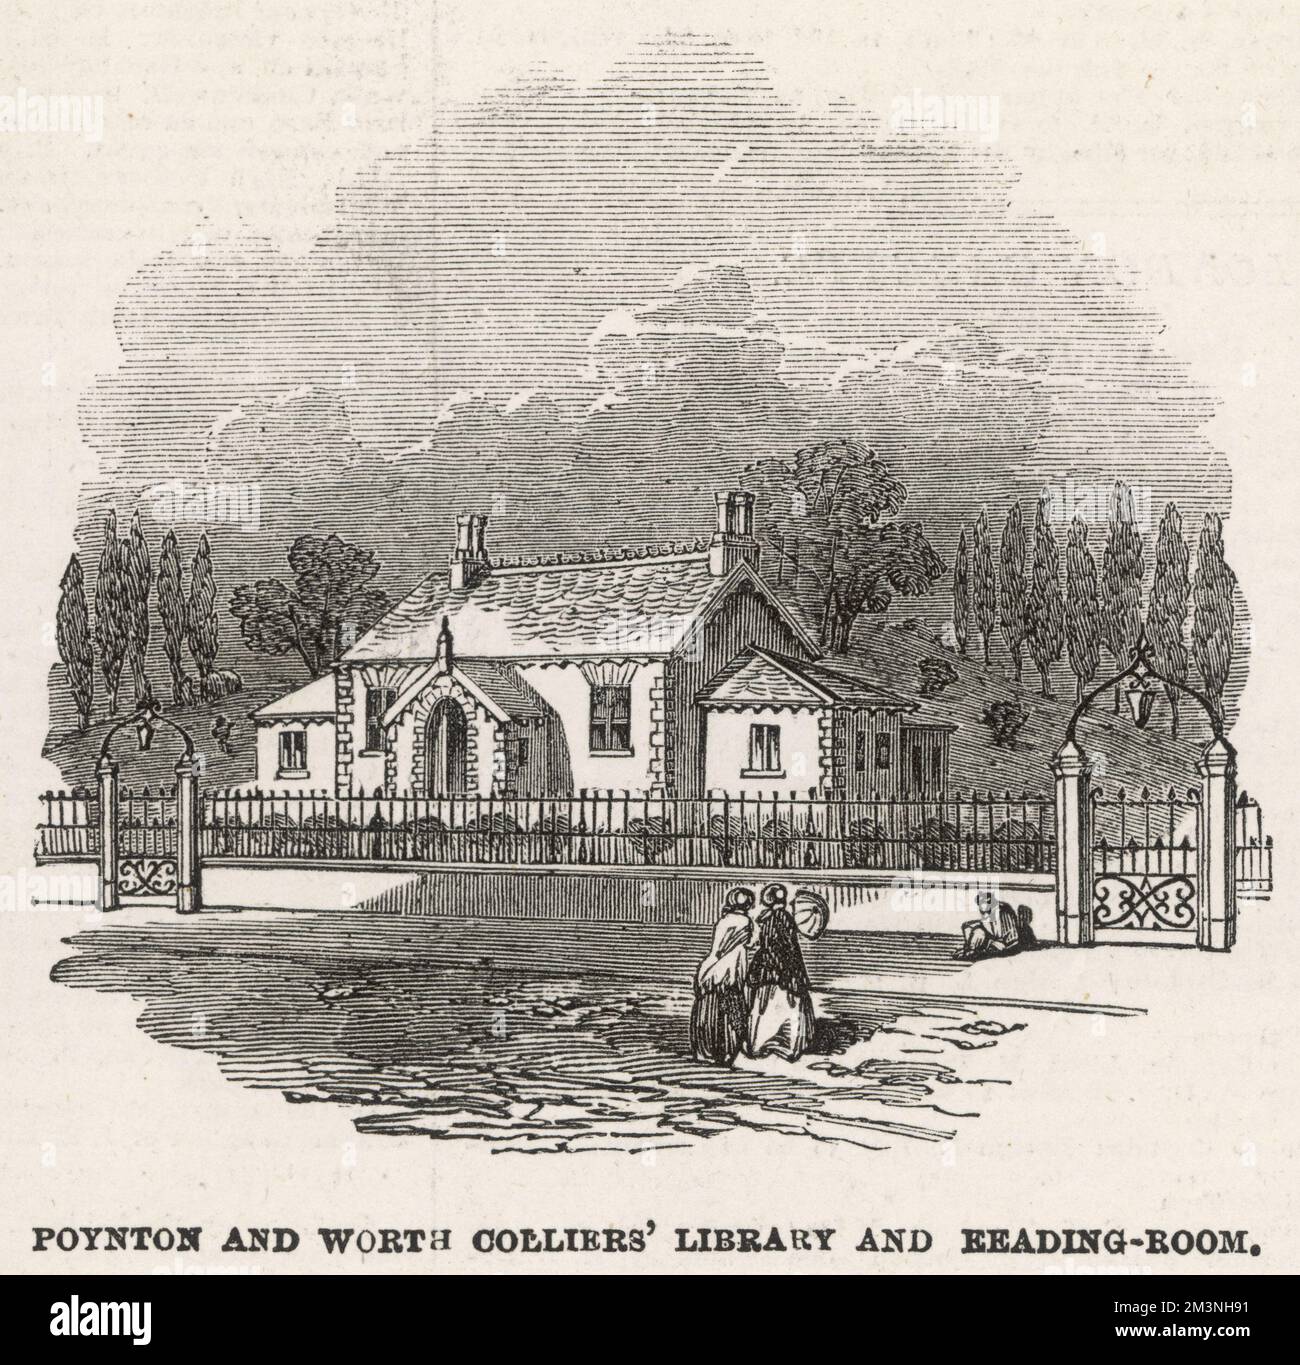 Biblioteca e sala lettura di Poynton e Worth colliers. Fondata nella proprietà di Lord Vernon a Poynton, la biblioteca operava su una base di abbonamento sovvenzionato, offrendo l'istruzione a tutti i lavoratori immobiliari. Data: 1854 Foto Stock